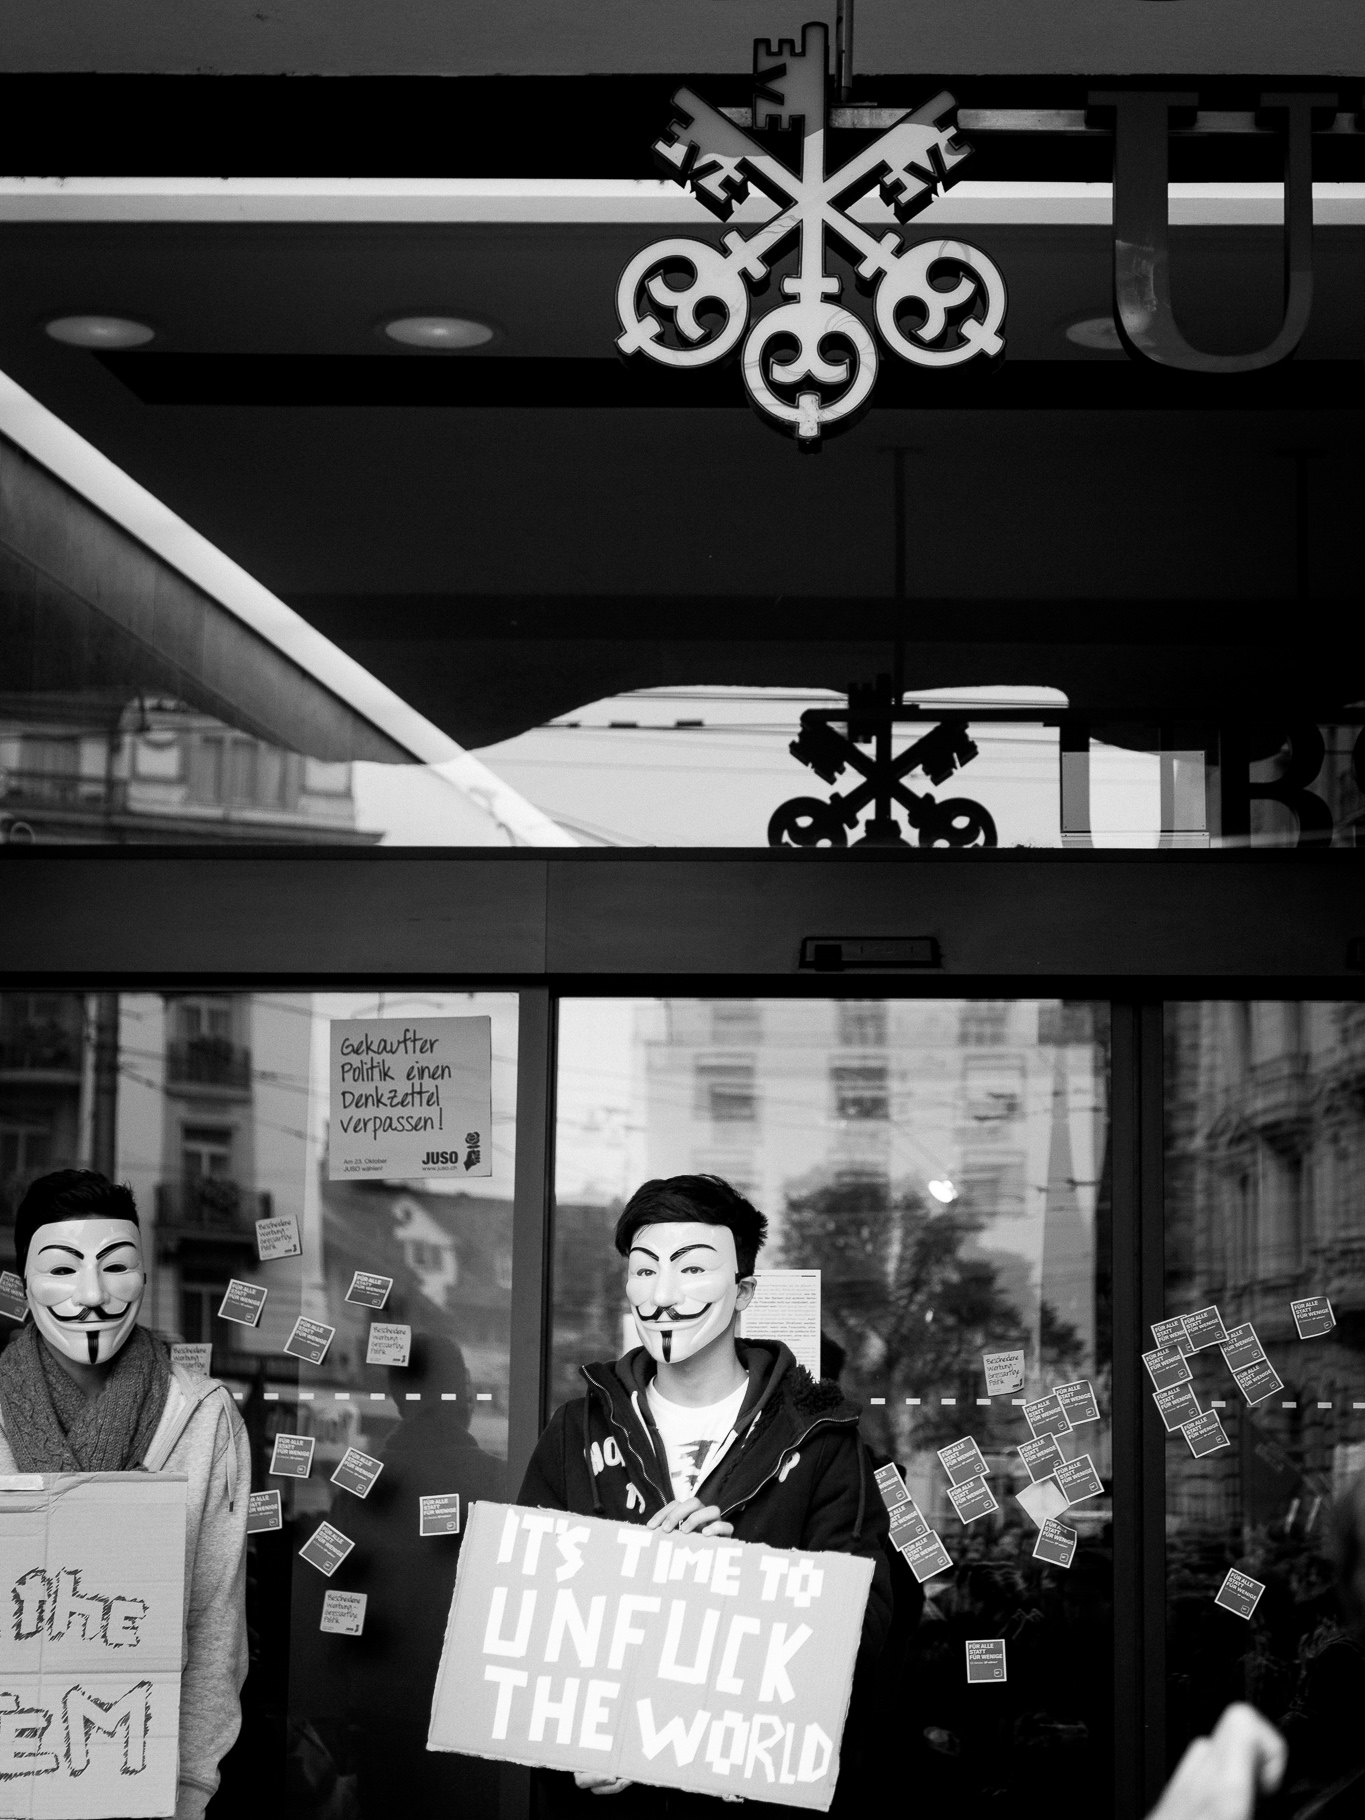 IT'S TIME TO UNFUCK THE WORLD. Occupy Paradeplatz, Zurich, Switzerland. 15 October 2011